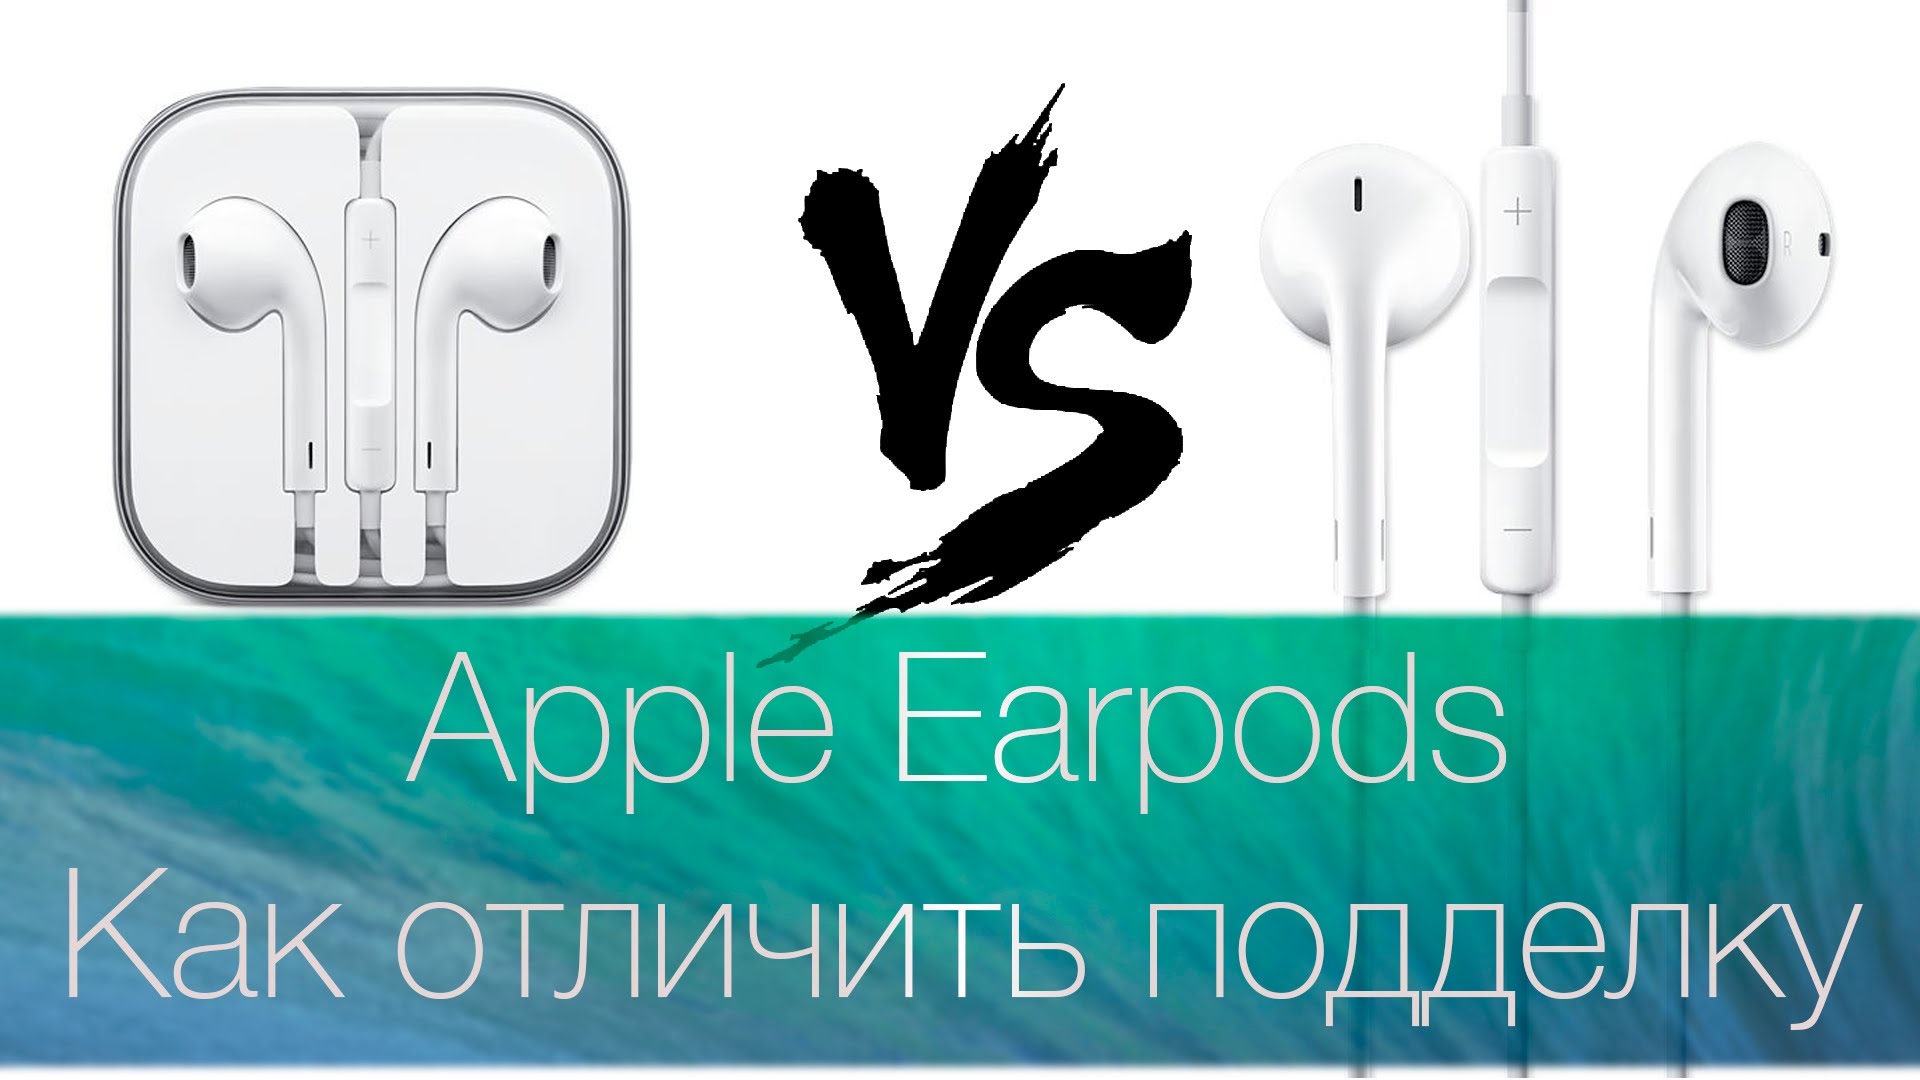 Как отличить аирподсы 2. Как отличить Earpods. Как отличить Apple Earpods.